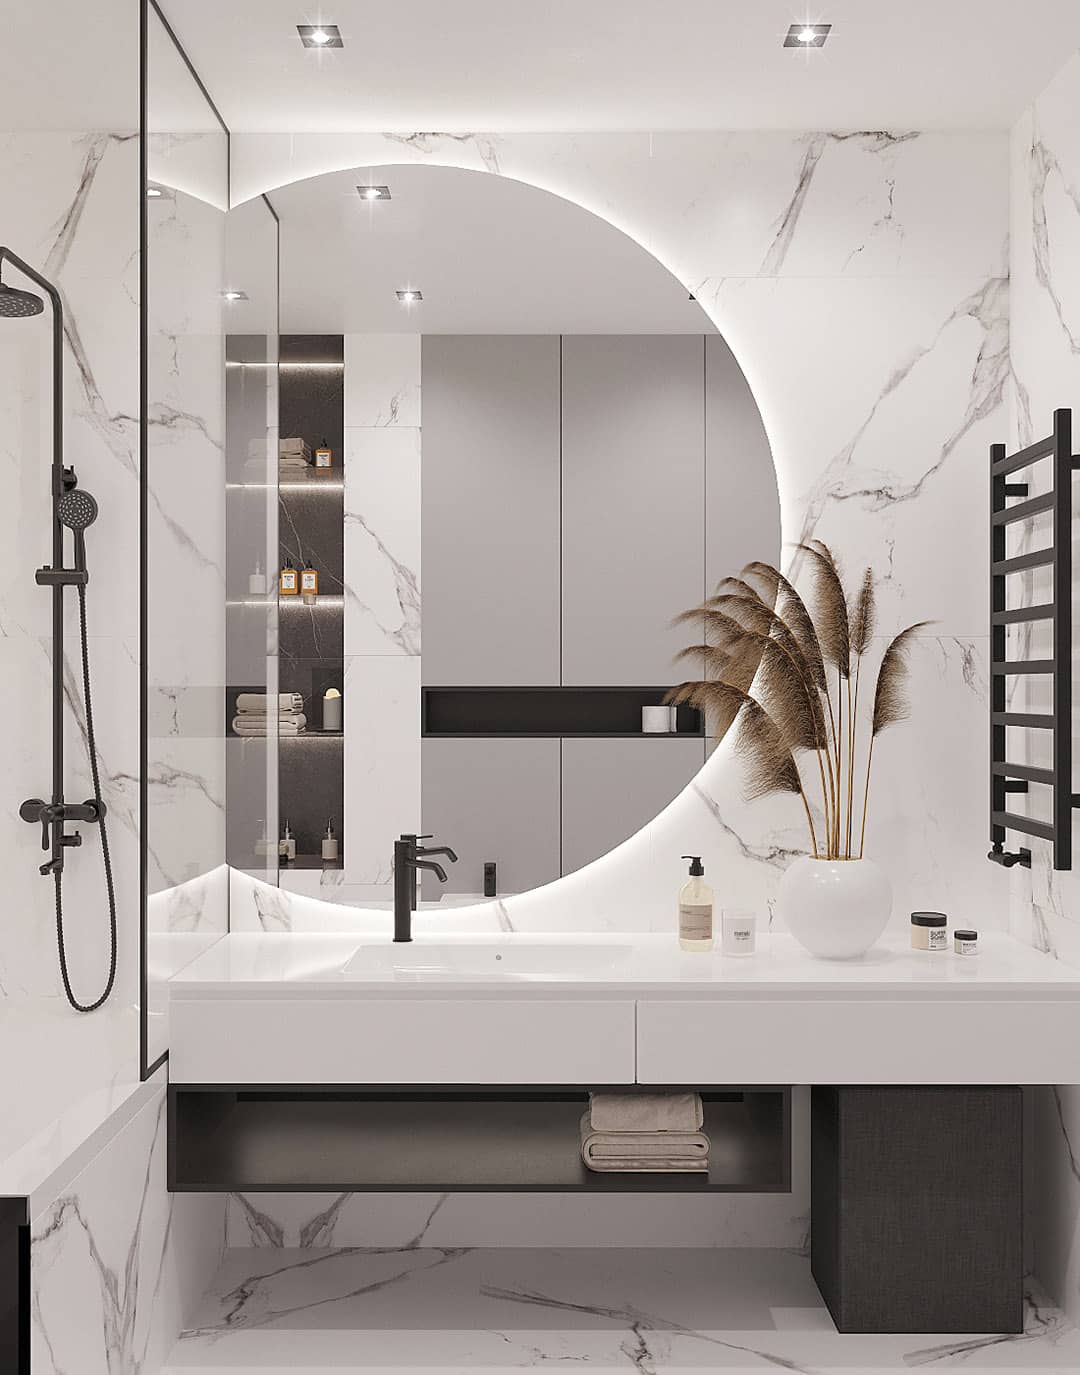 Sử dụng gương lớn để tạo cảm giác phòng tắm nhỏ rộng hơn